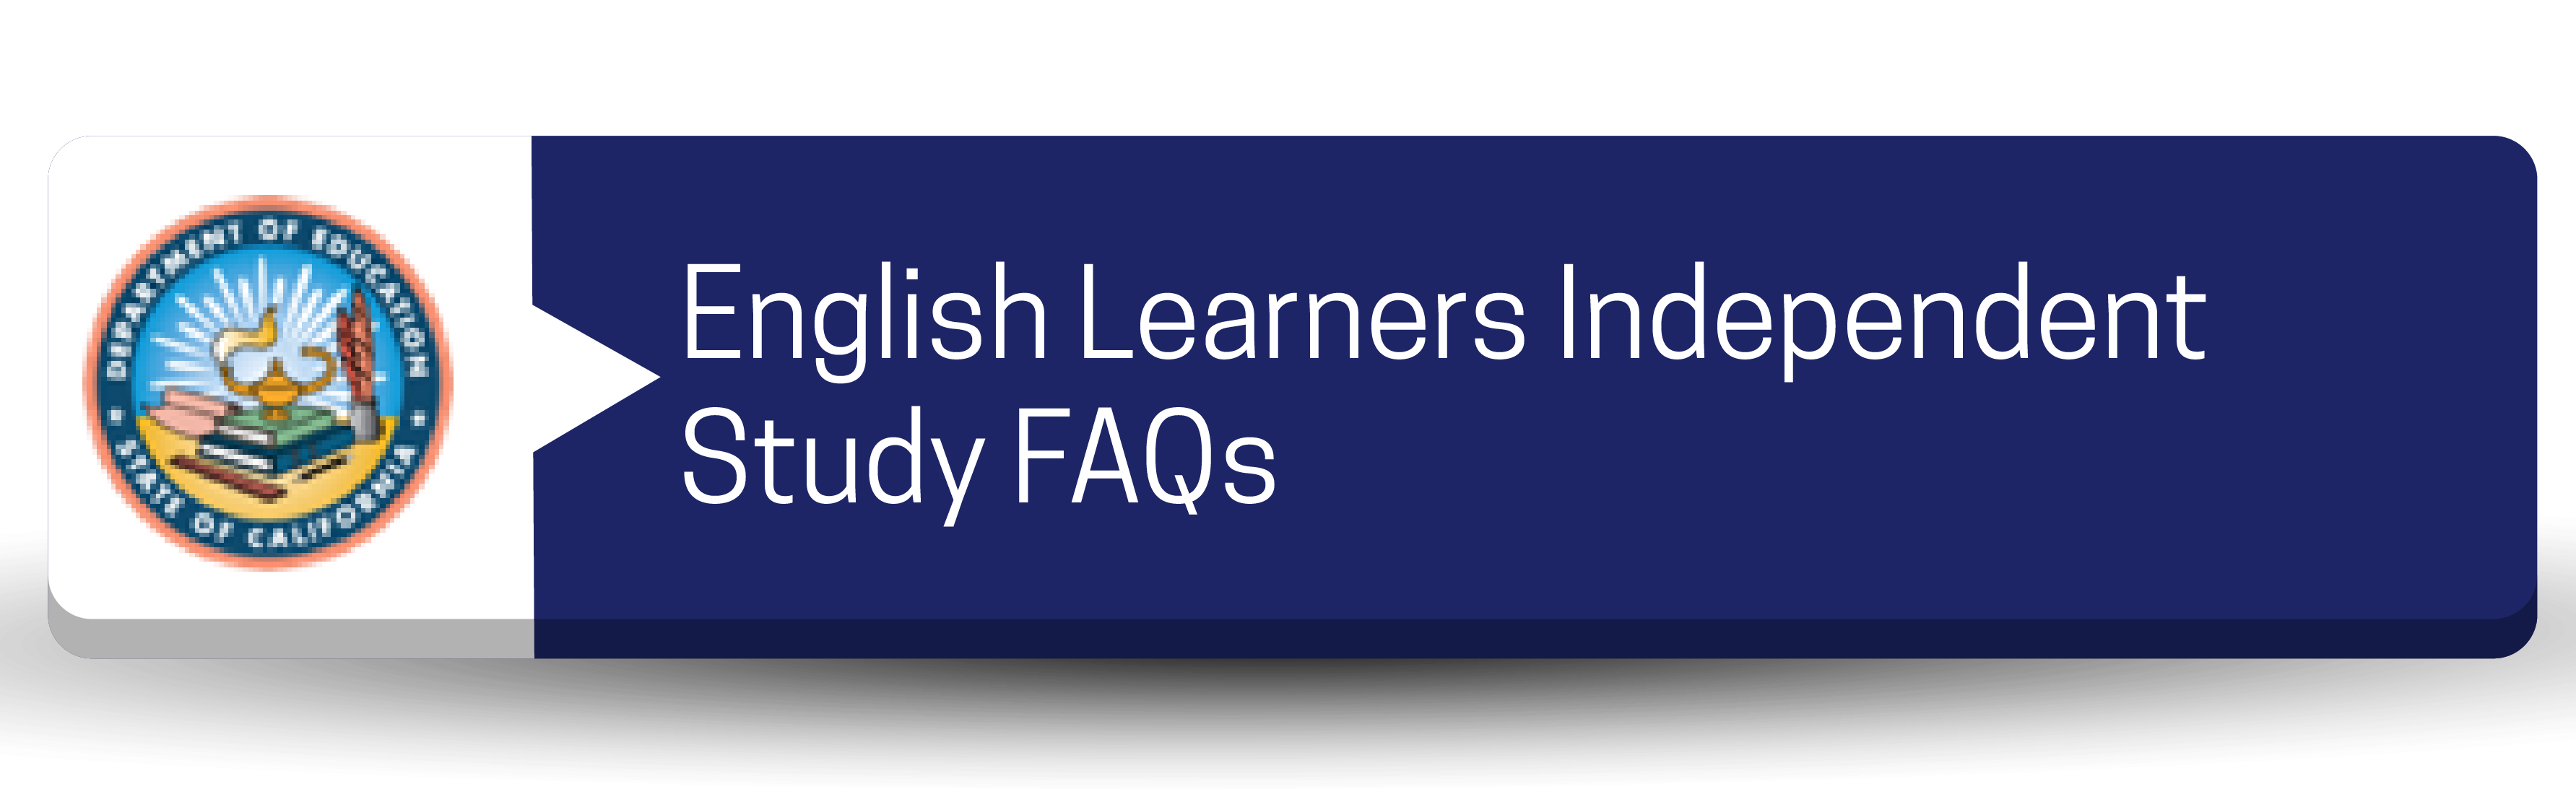 Botón de preguntas frecuentes sobre el estudio independiente de los estudiantes de inglés